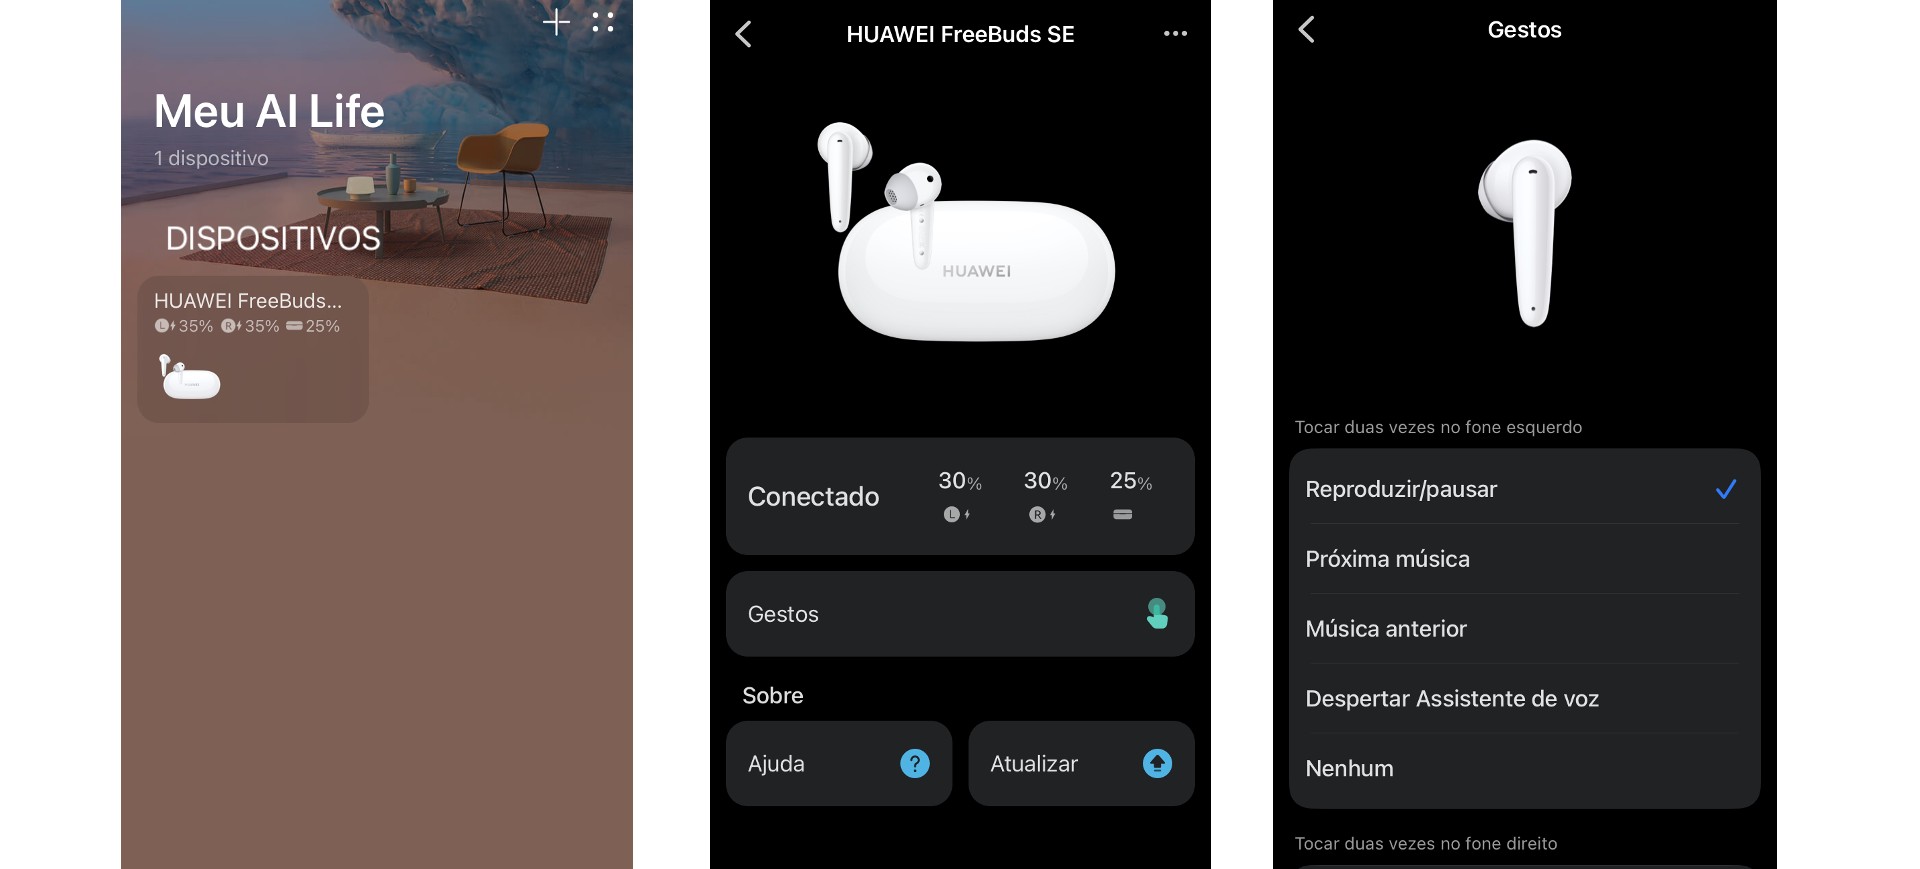 Review Huawei FreeBuds SE - imagem mostra três capturas de tela do aplicativo HUAWEI AI Life: tela inicial, que mostra o nível de bateria do produto; telas internas que mostram opções de atualização e ajuda, bem como personalização de gestos